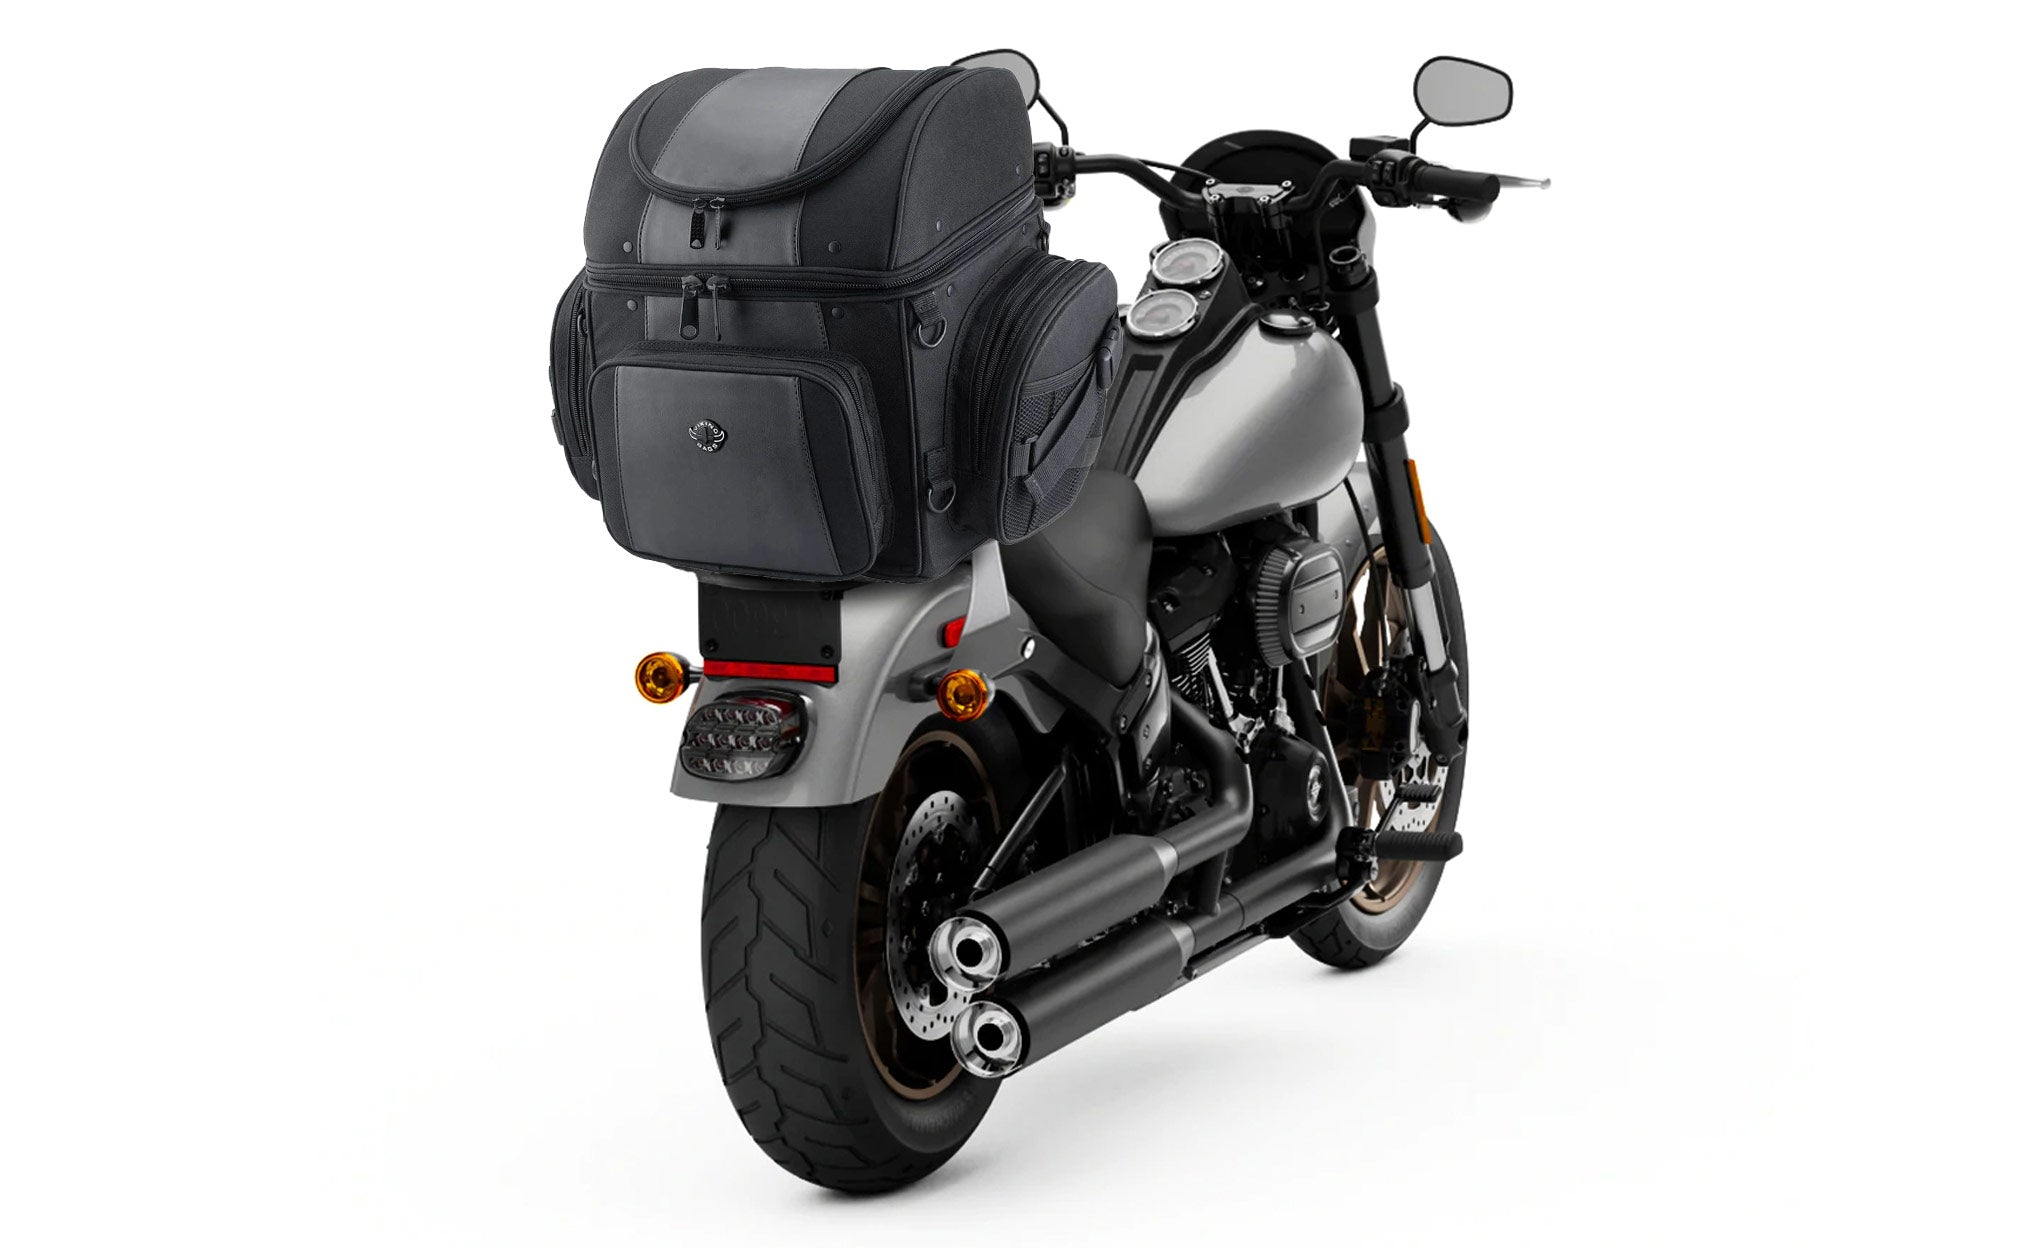 Viking Galleon Large Suzuki Motorcycle Sissy Bar Bag Bag on Bike View @expand